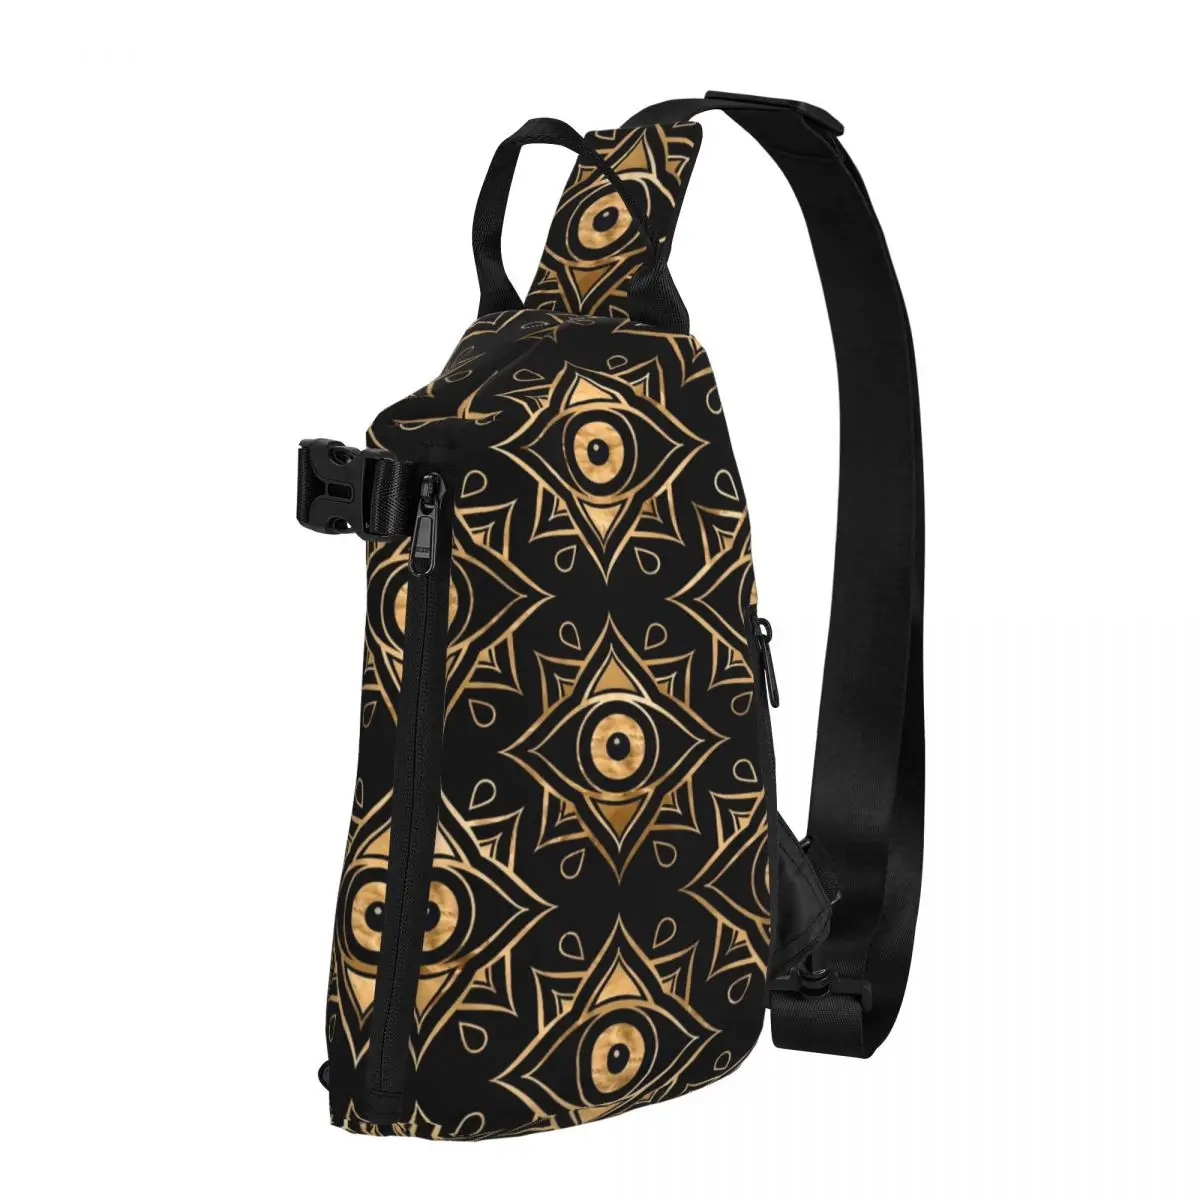 

Винтажная сумка через плечо сглаза для мужчин, черная и Золотая слинг-сумка для треккинга и активного отдыха, сумка через плечо для телефона на заказ